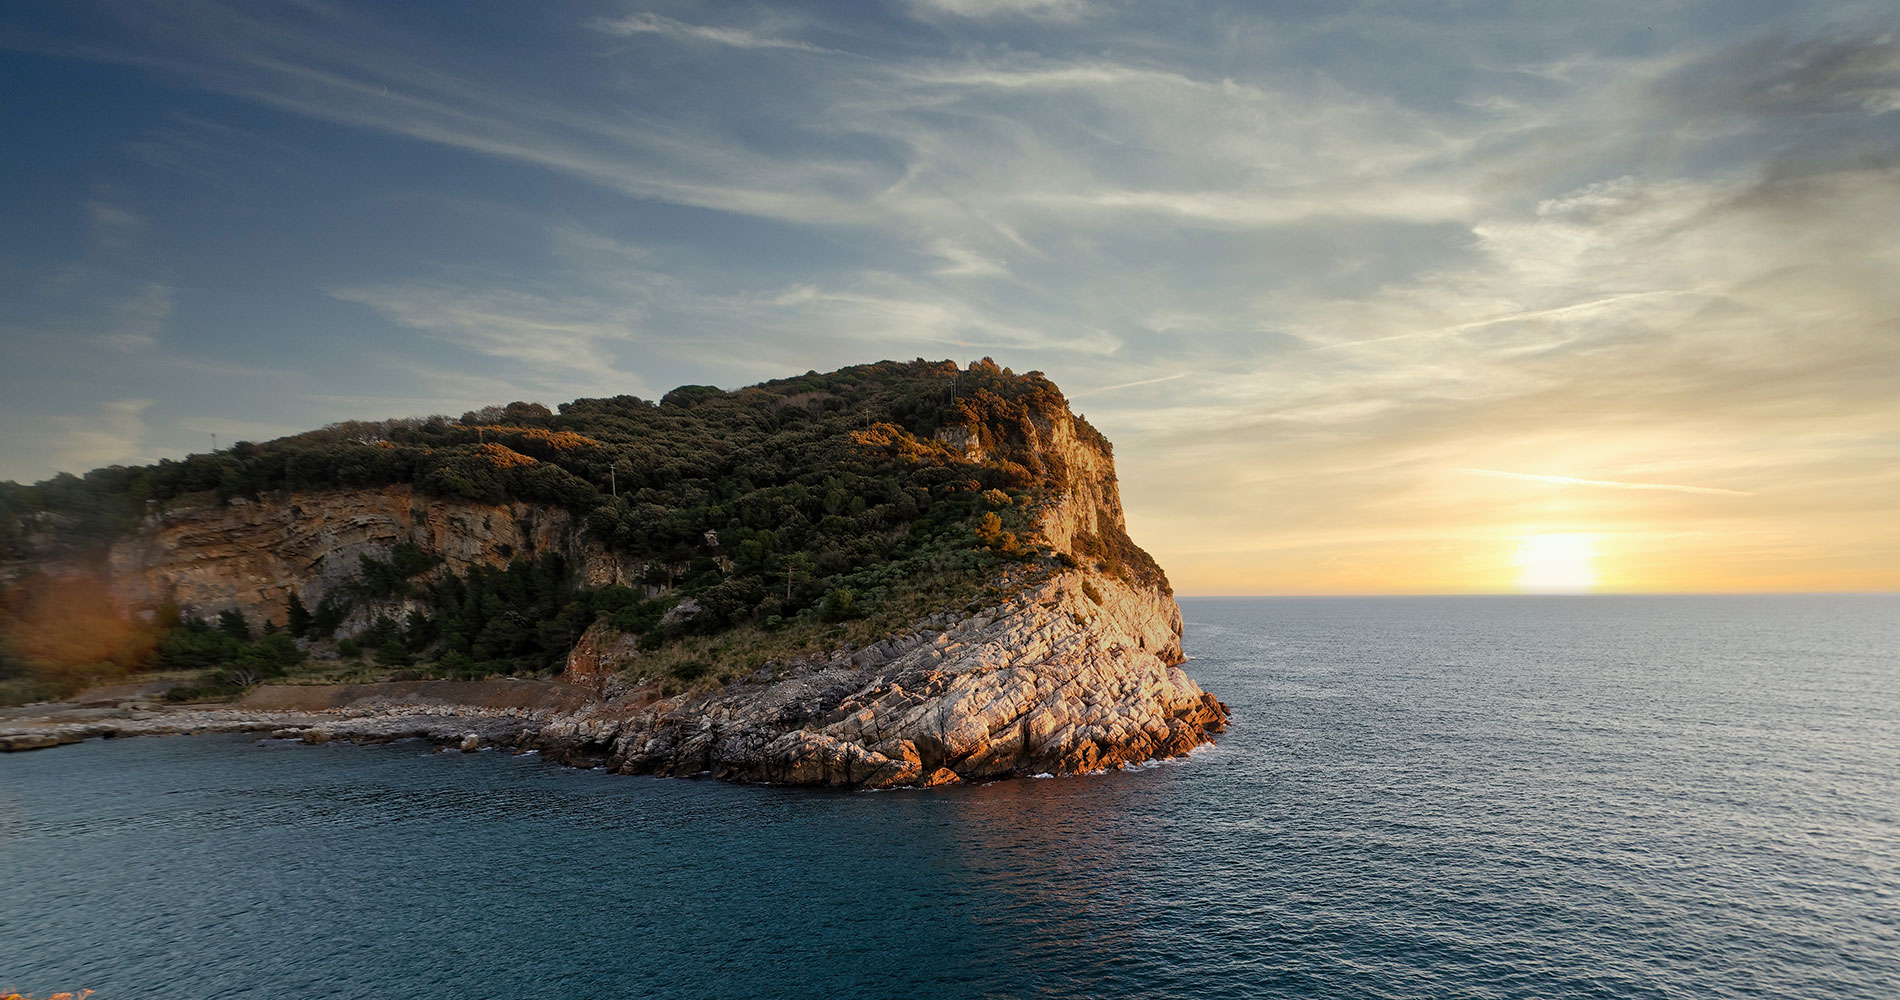 Fotos von der Insel Palmaria bei Sonnenuntergang